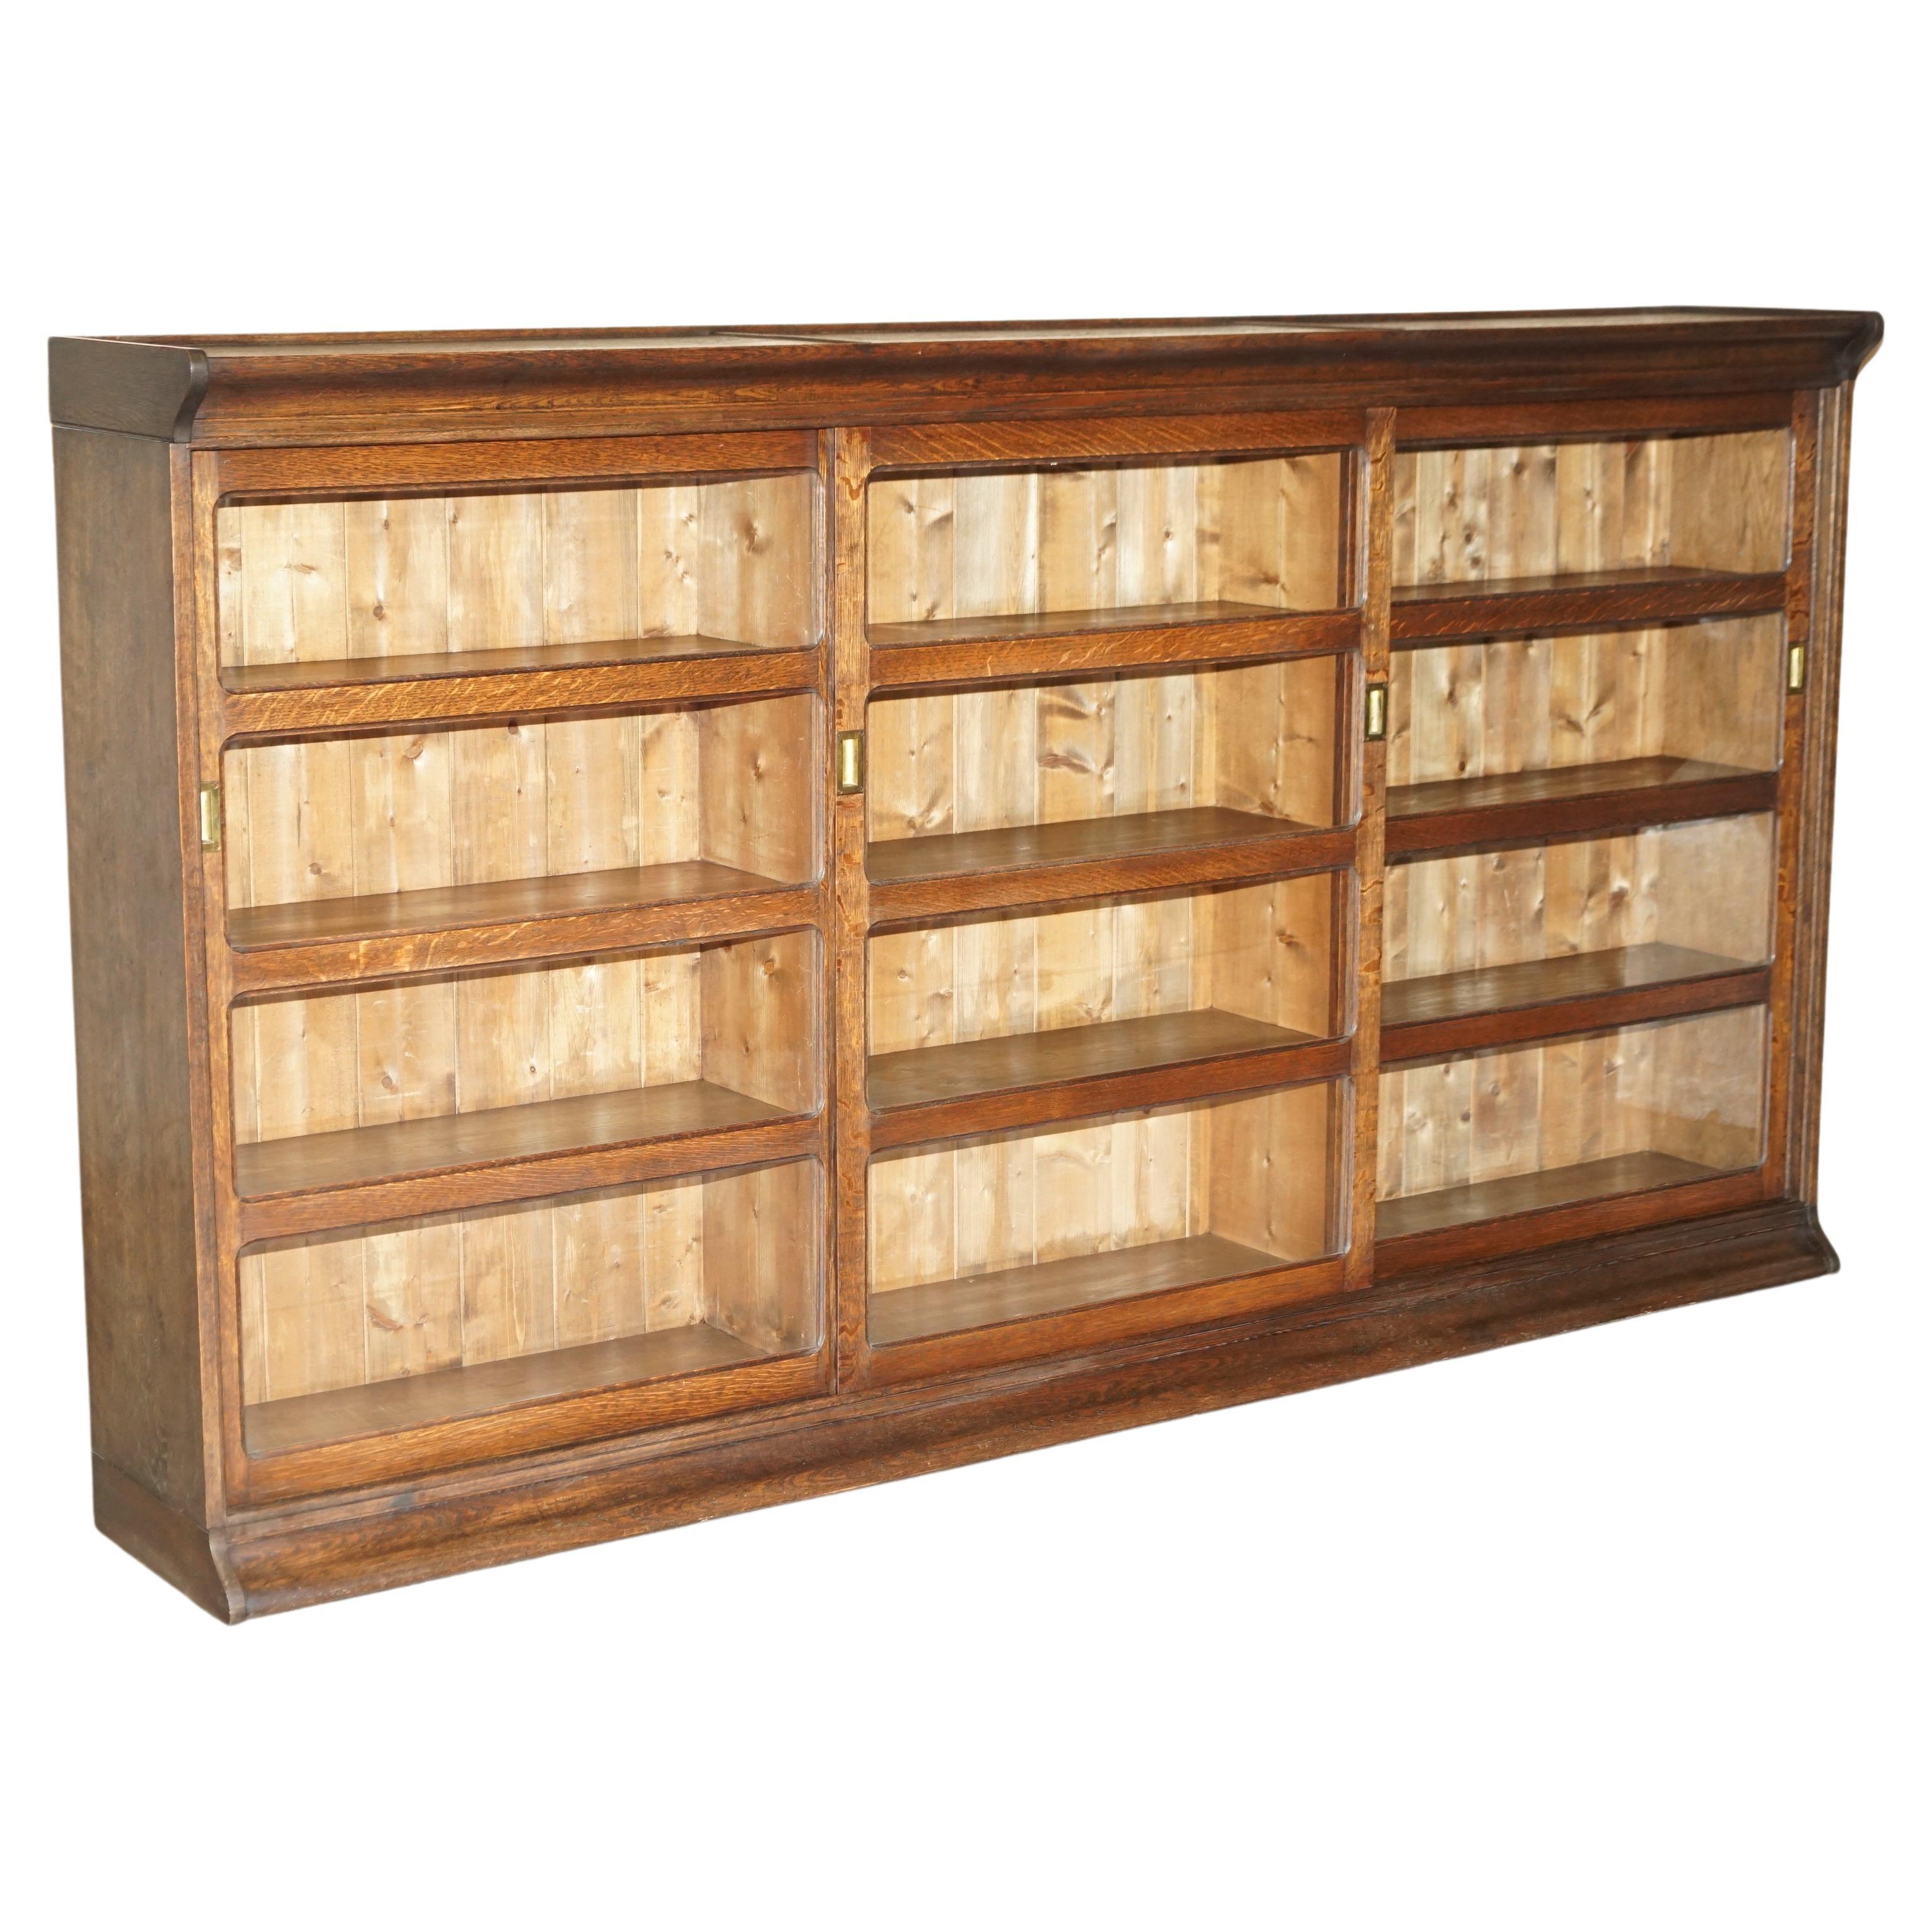 viktorianische Haberdashery Apotheker-Bücherregal/ Sideboard aus Eiche mit glasierten Türen